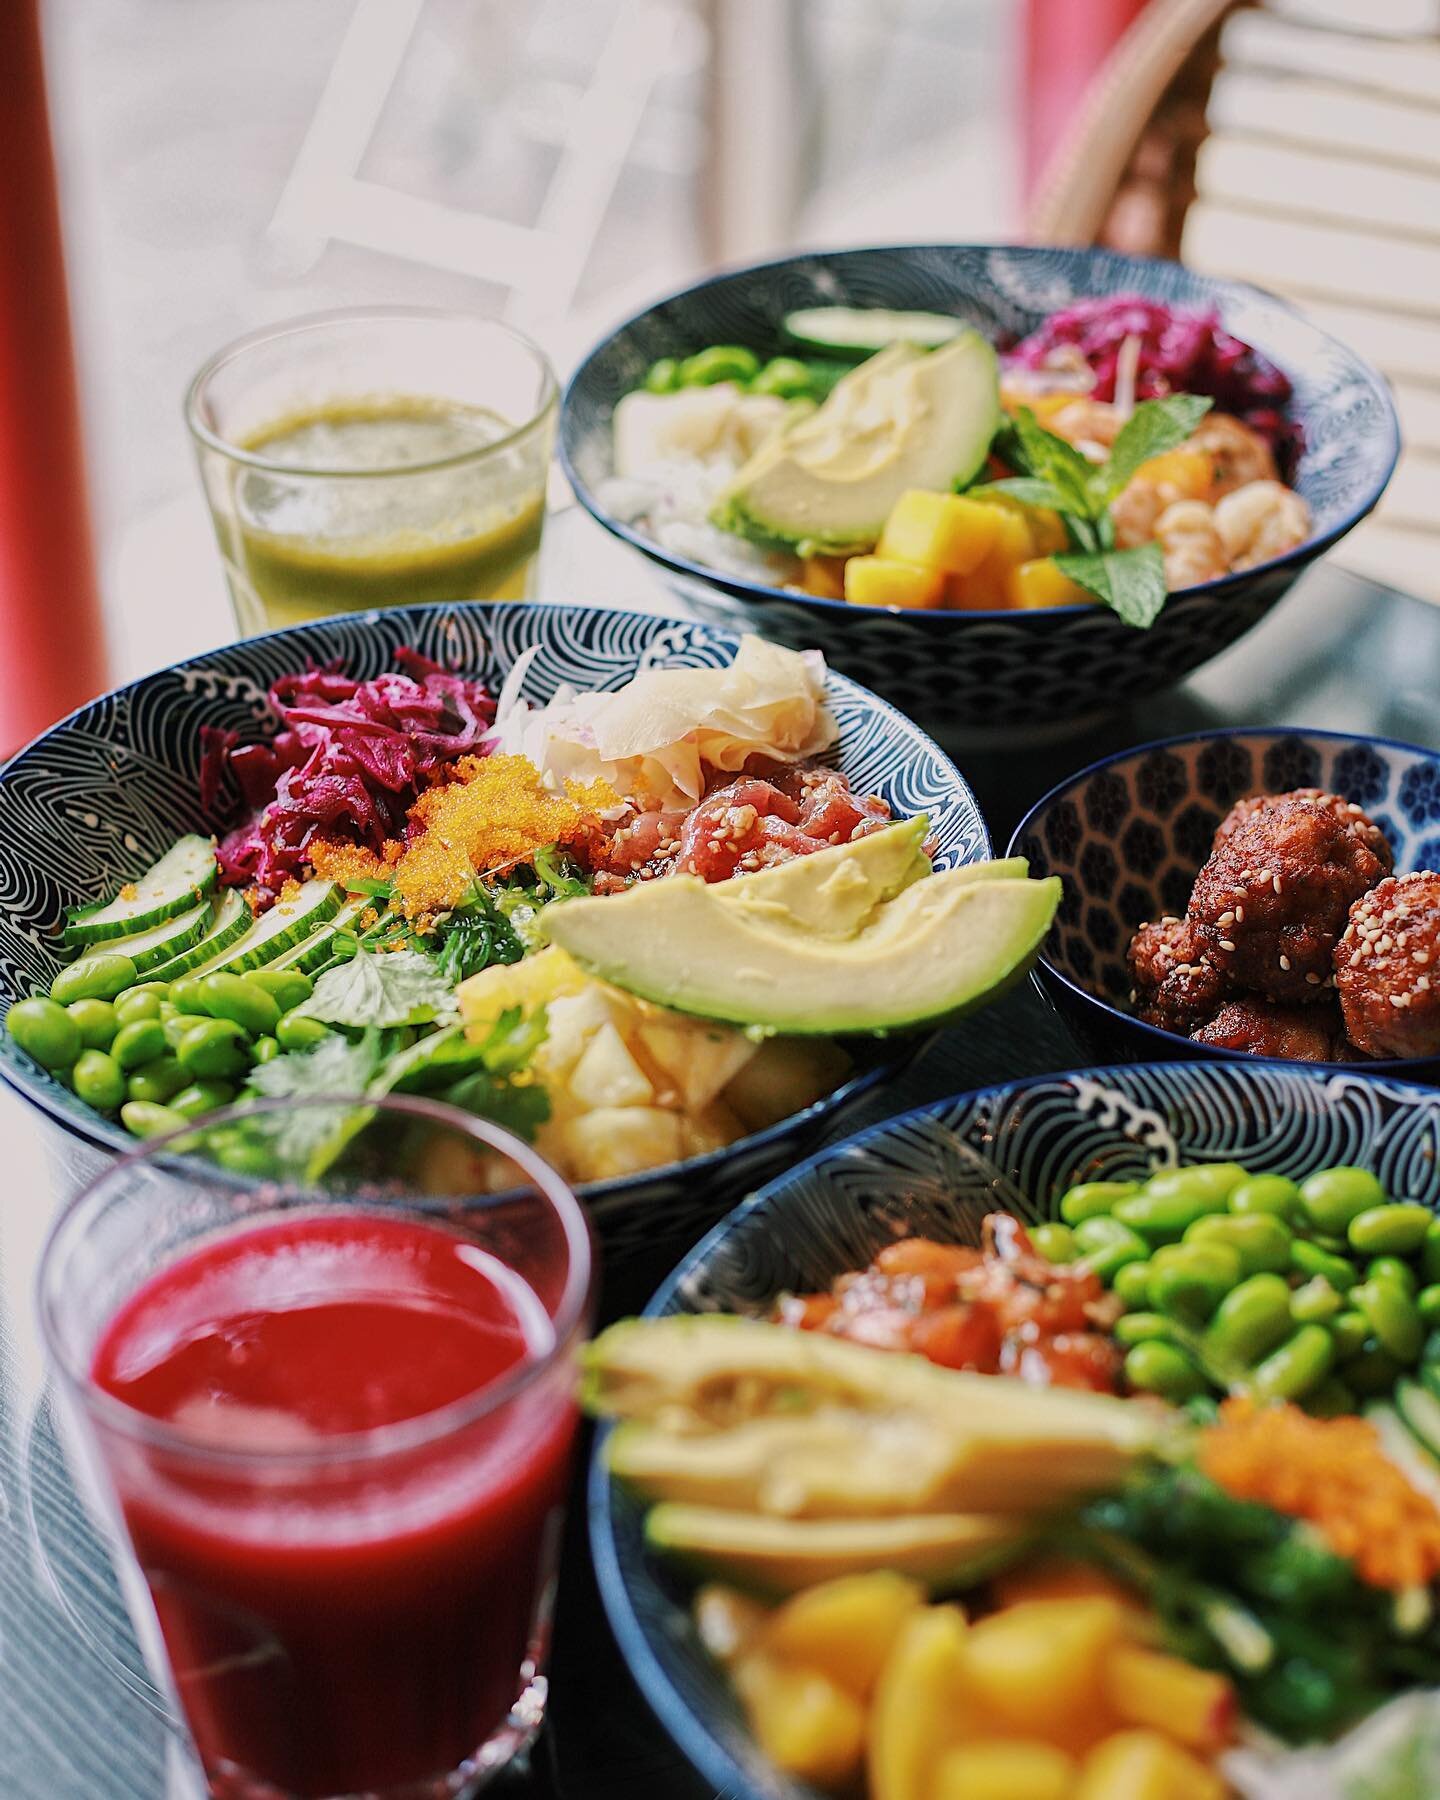 Des couleurs 
Des saveurs 
Que du bonheur devant vos yeux 
Et toi avec qui tu partagerais ce repas?
#pokebowl #poke #restaurant #fresh #brunch